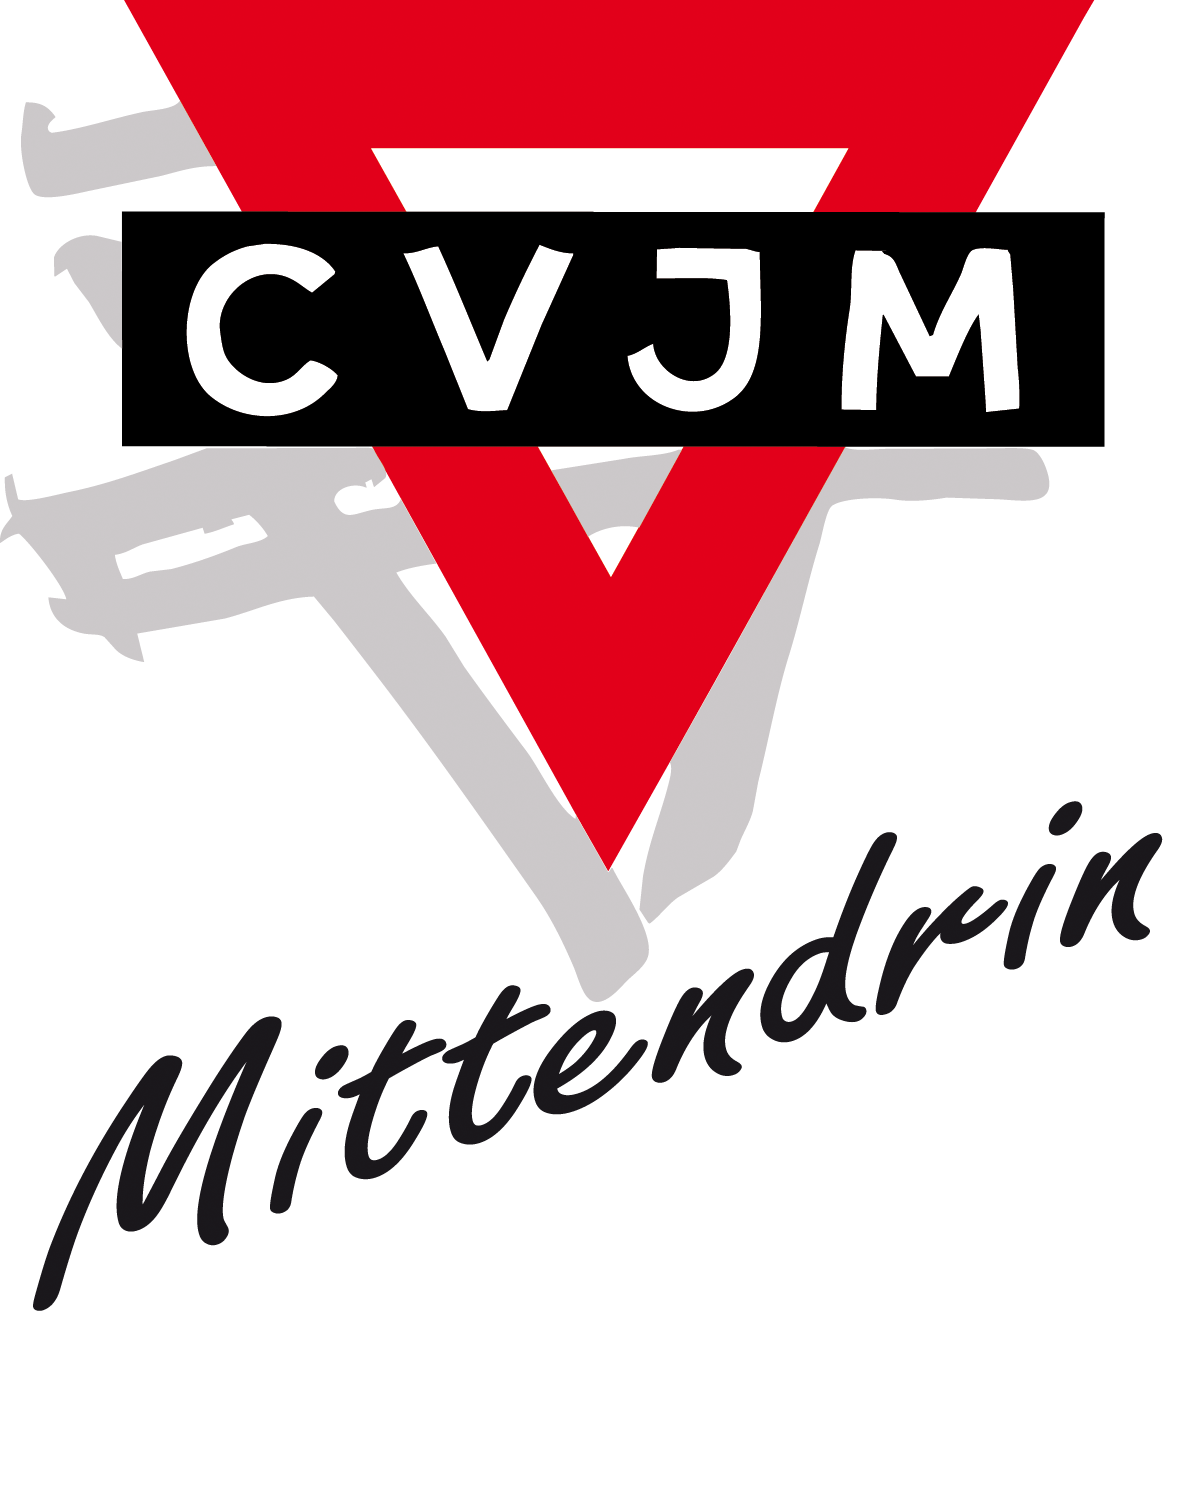 CVJM Mülheim an der Ruhr e. V.